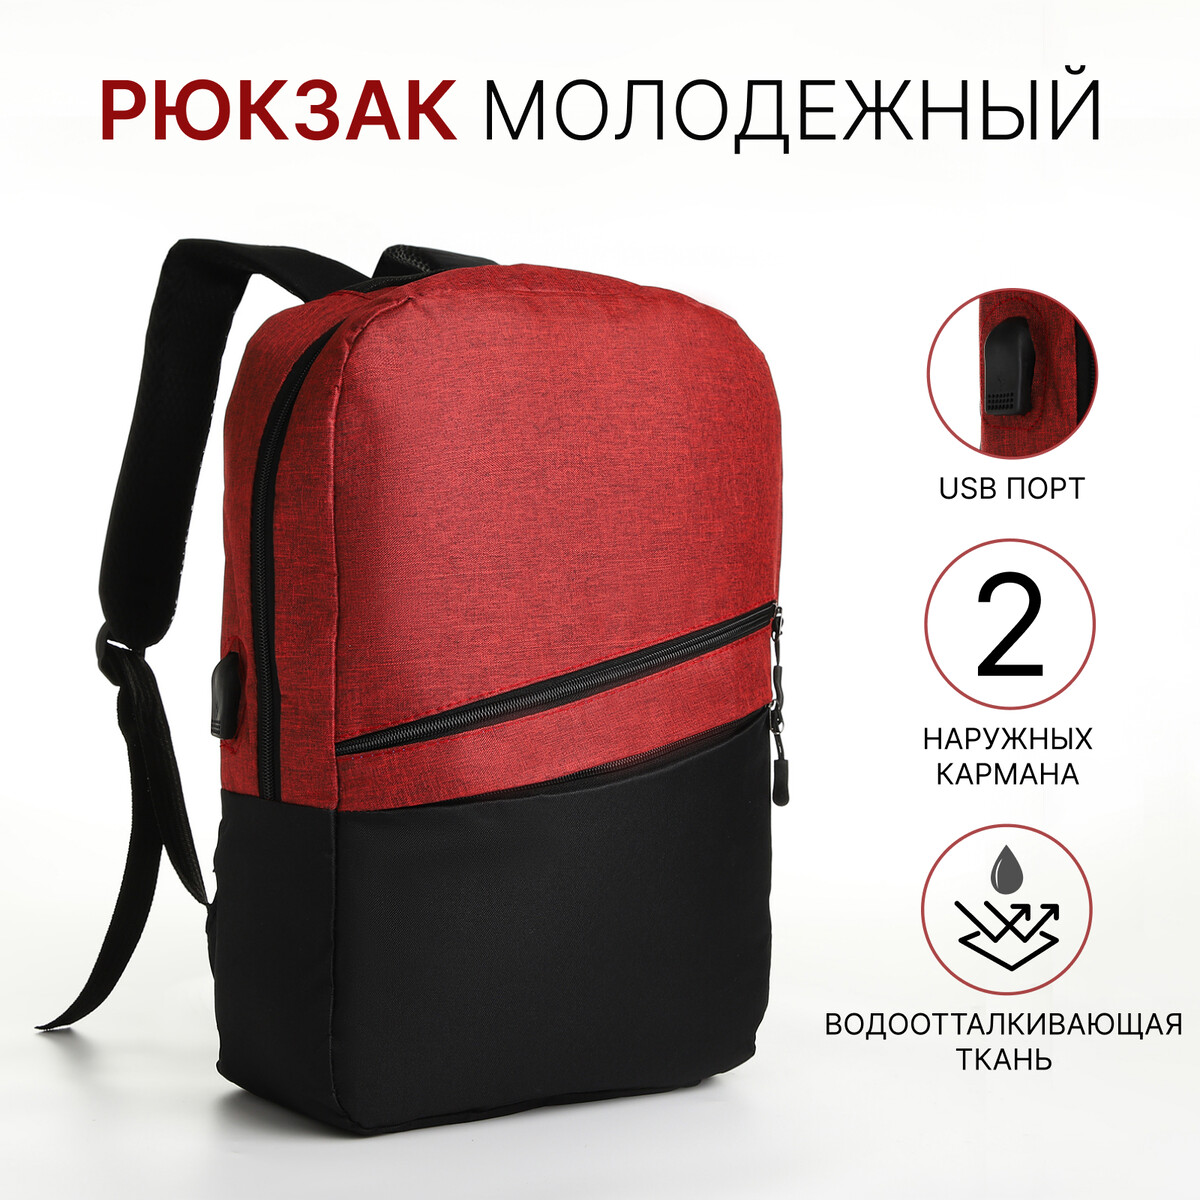 Рюкзак городской с usb из текстиля на молнии, 2 кармана, цвет черный/красный рюкзак wenger next ryde 611991 16 красный антрацит 26 л